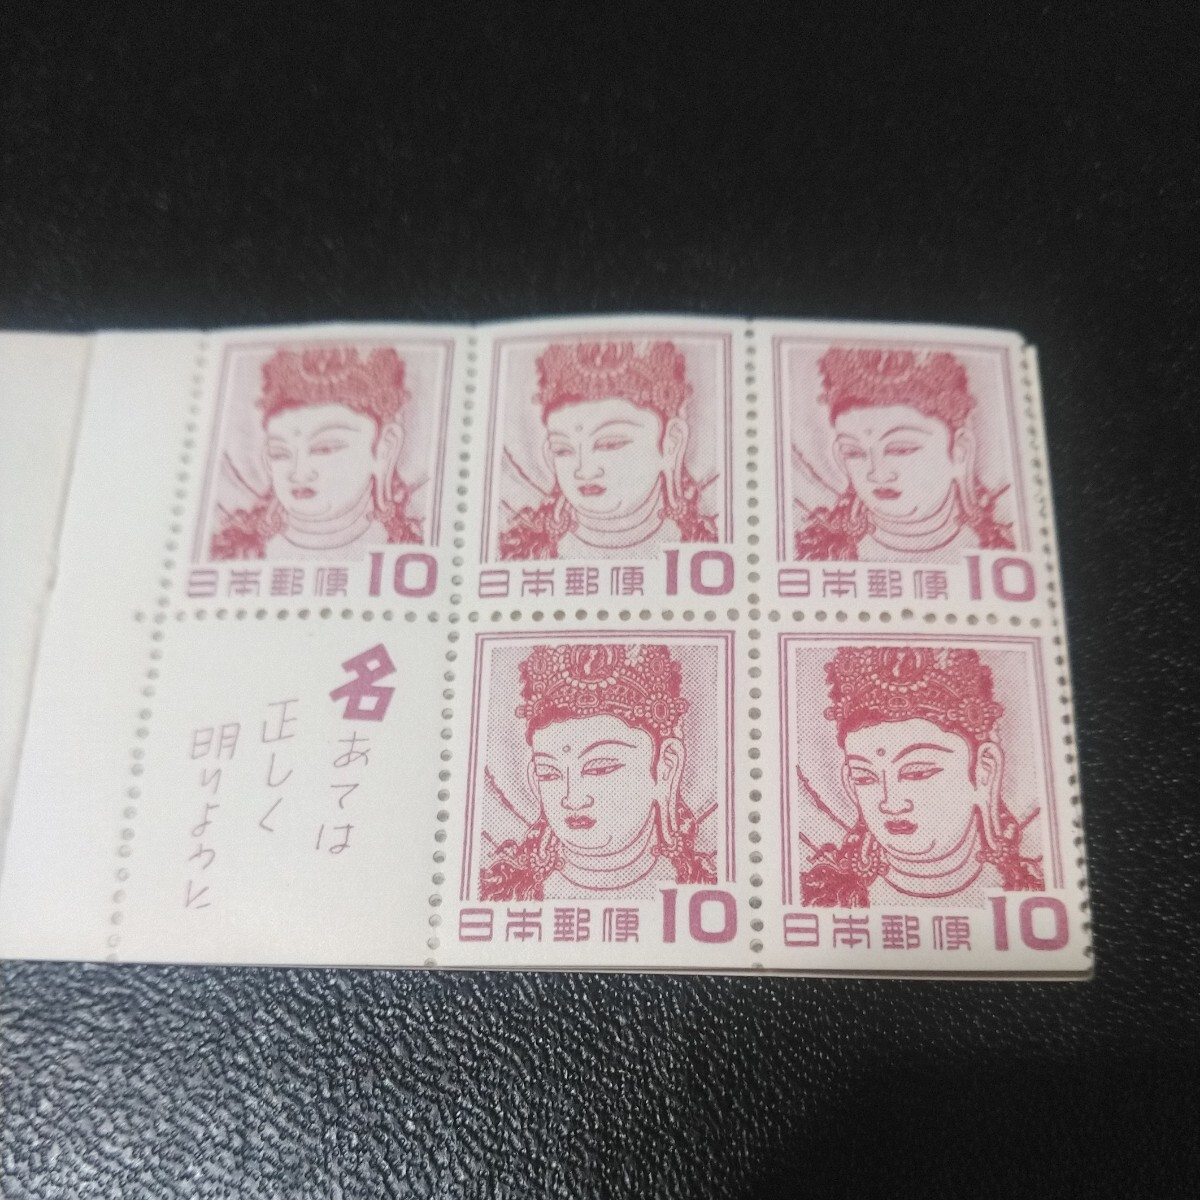 郵便切手帳ペーン 切手趣味週間記念 法隆寺壁画 1冊の画像3